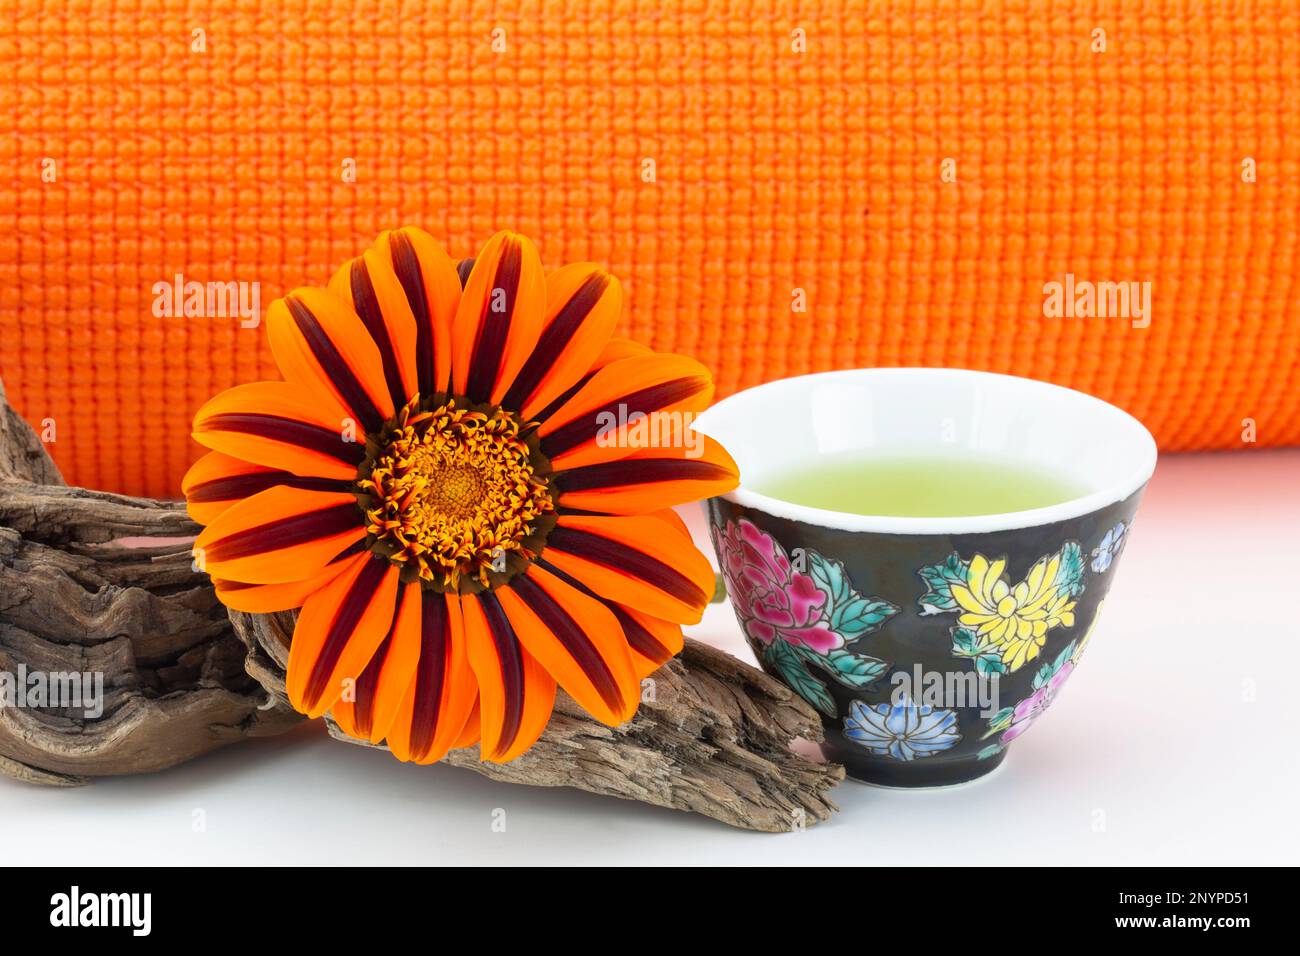 Exercice, hydratation et nature dans un équilibre sain vu dans le tapis de yoga orange, pétales orange naturels de fleur de Marguerite, et simple tasse de thé vert Banque D'Images